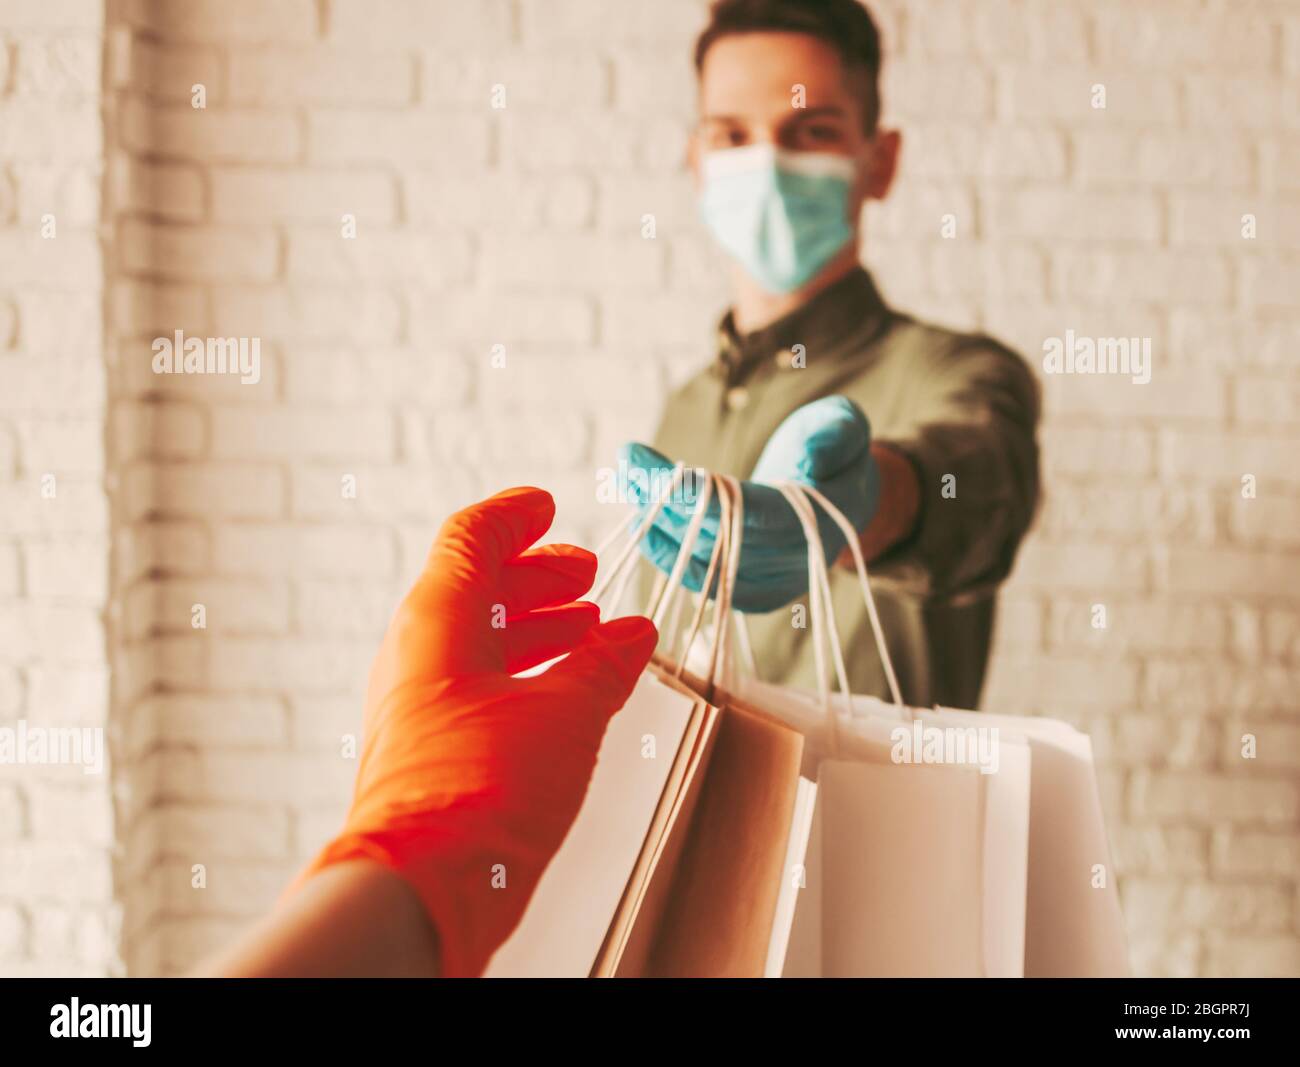 Le livreur de l'homme dans le masque de protection et les gants médicaux donnant des sacs en papier au client. Fille recevant des paquets de papier. Livraison en ligne sécurisée Banque D'Images